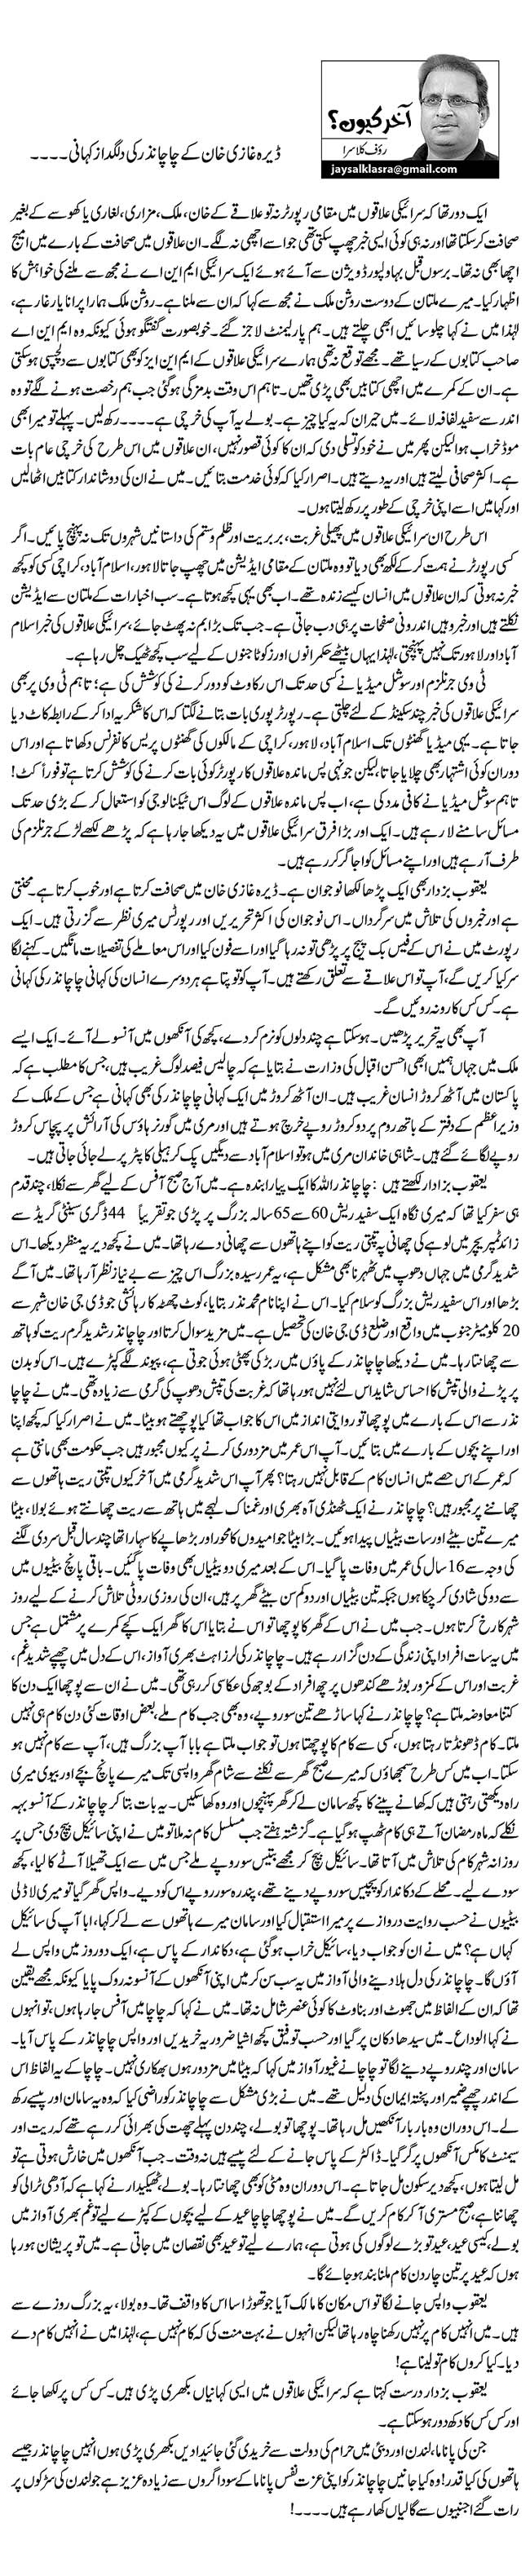 ڈیرہ غازی خان کے چاچا نذر کی دلگداز کہانی۔۔۔۔   